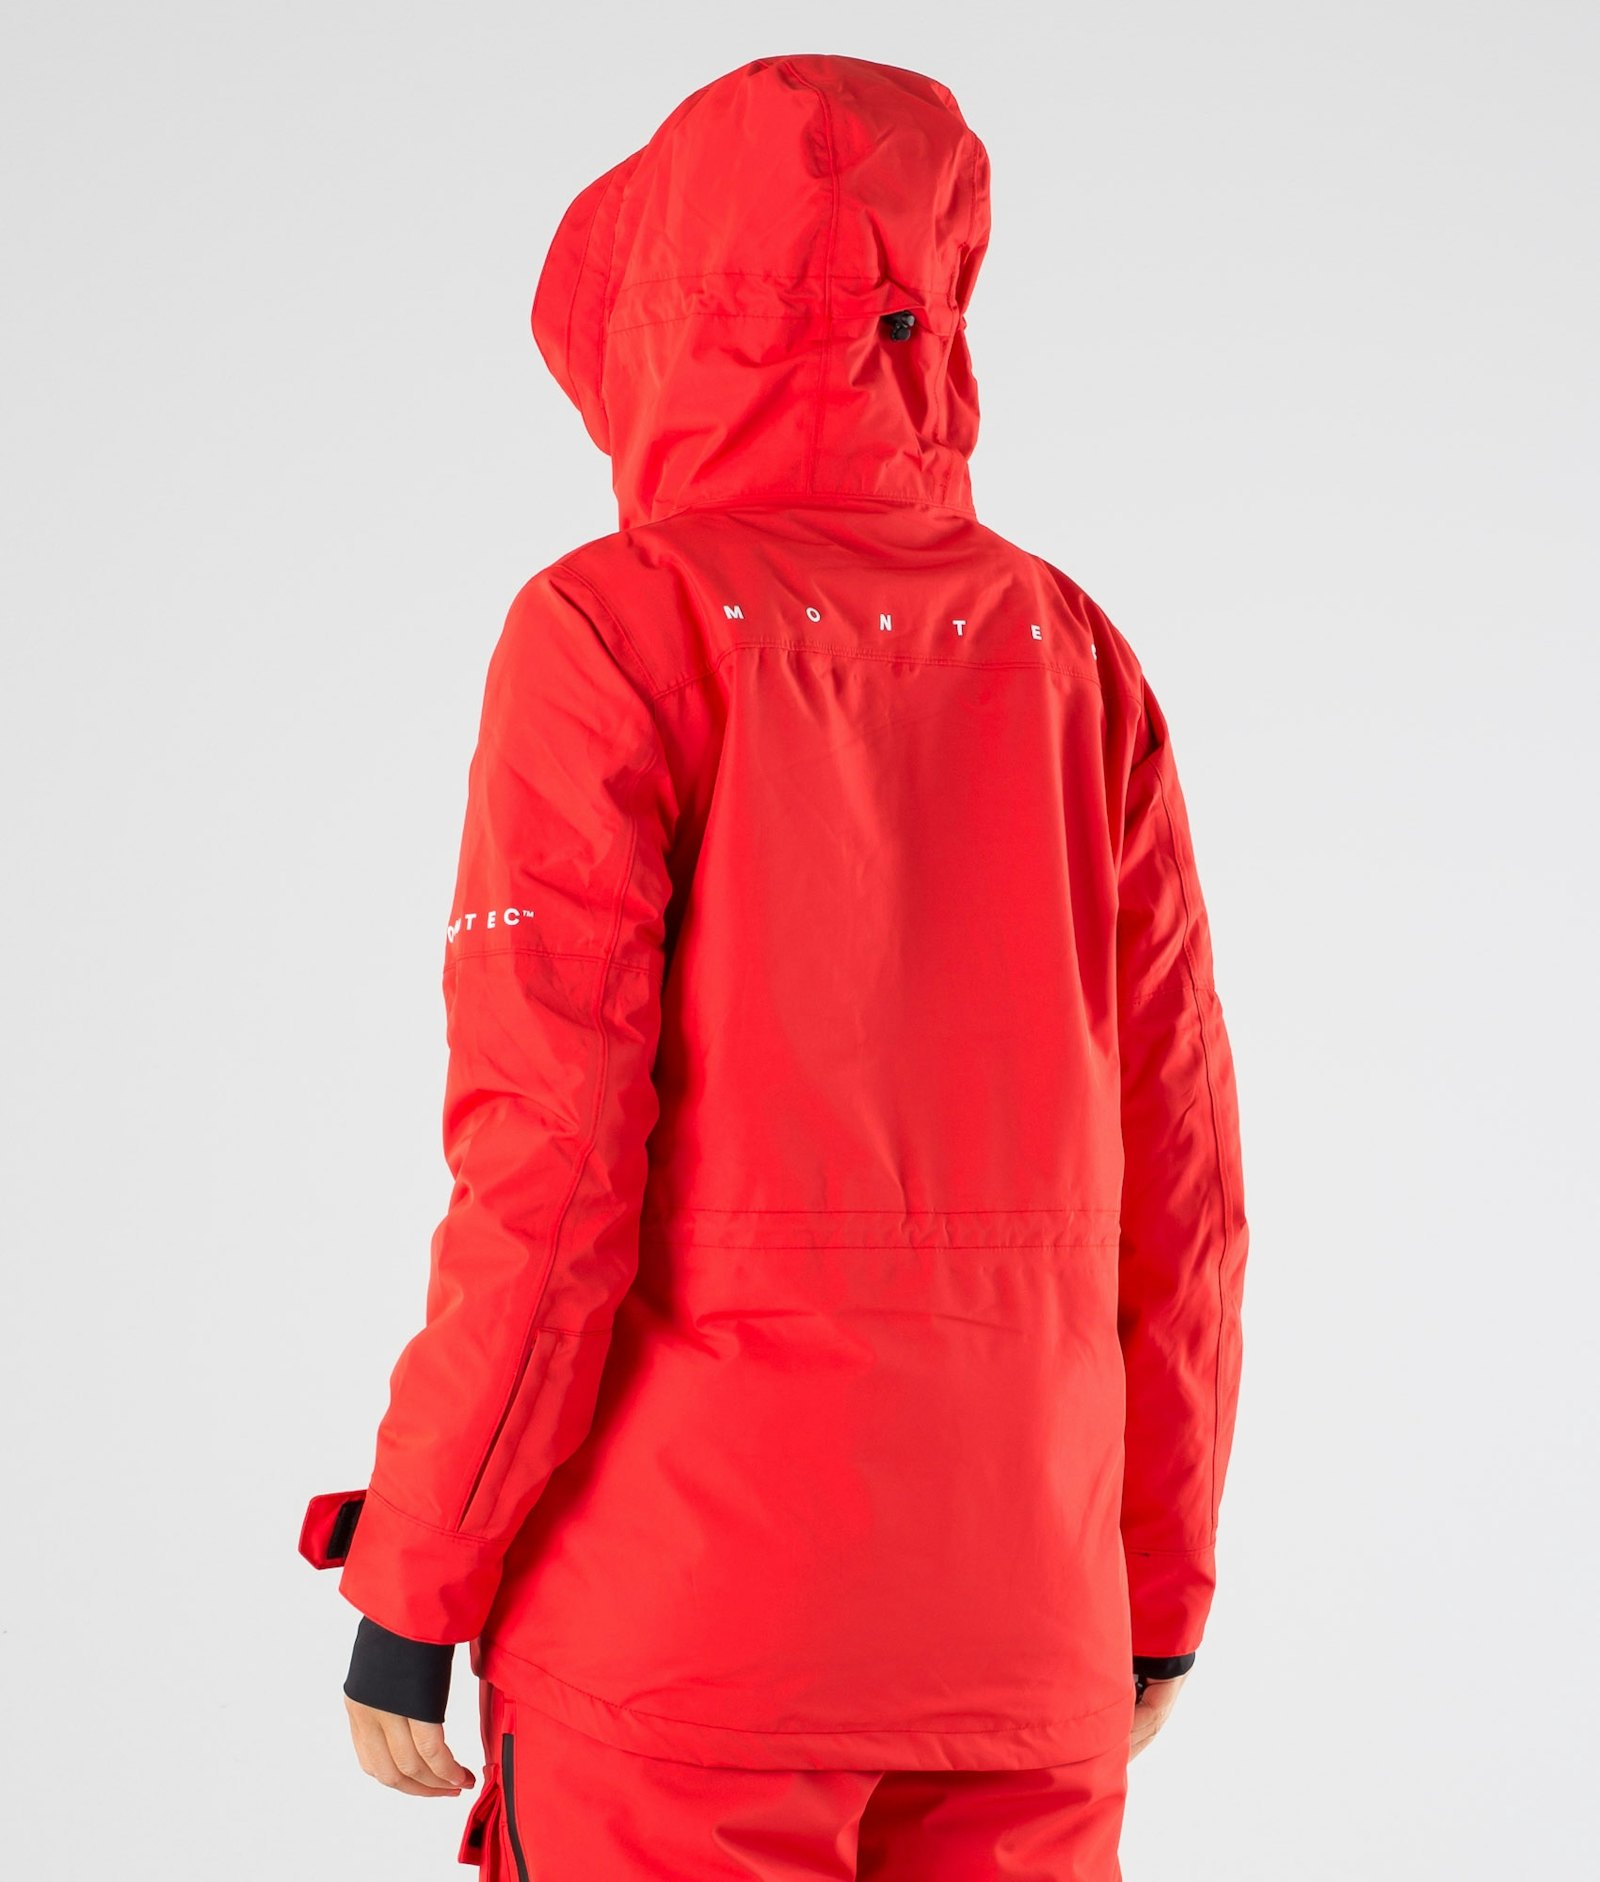 Montec Fawk W 2019 Snowboard jas Dames Red